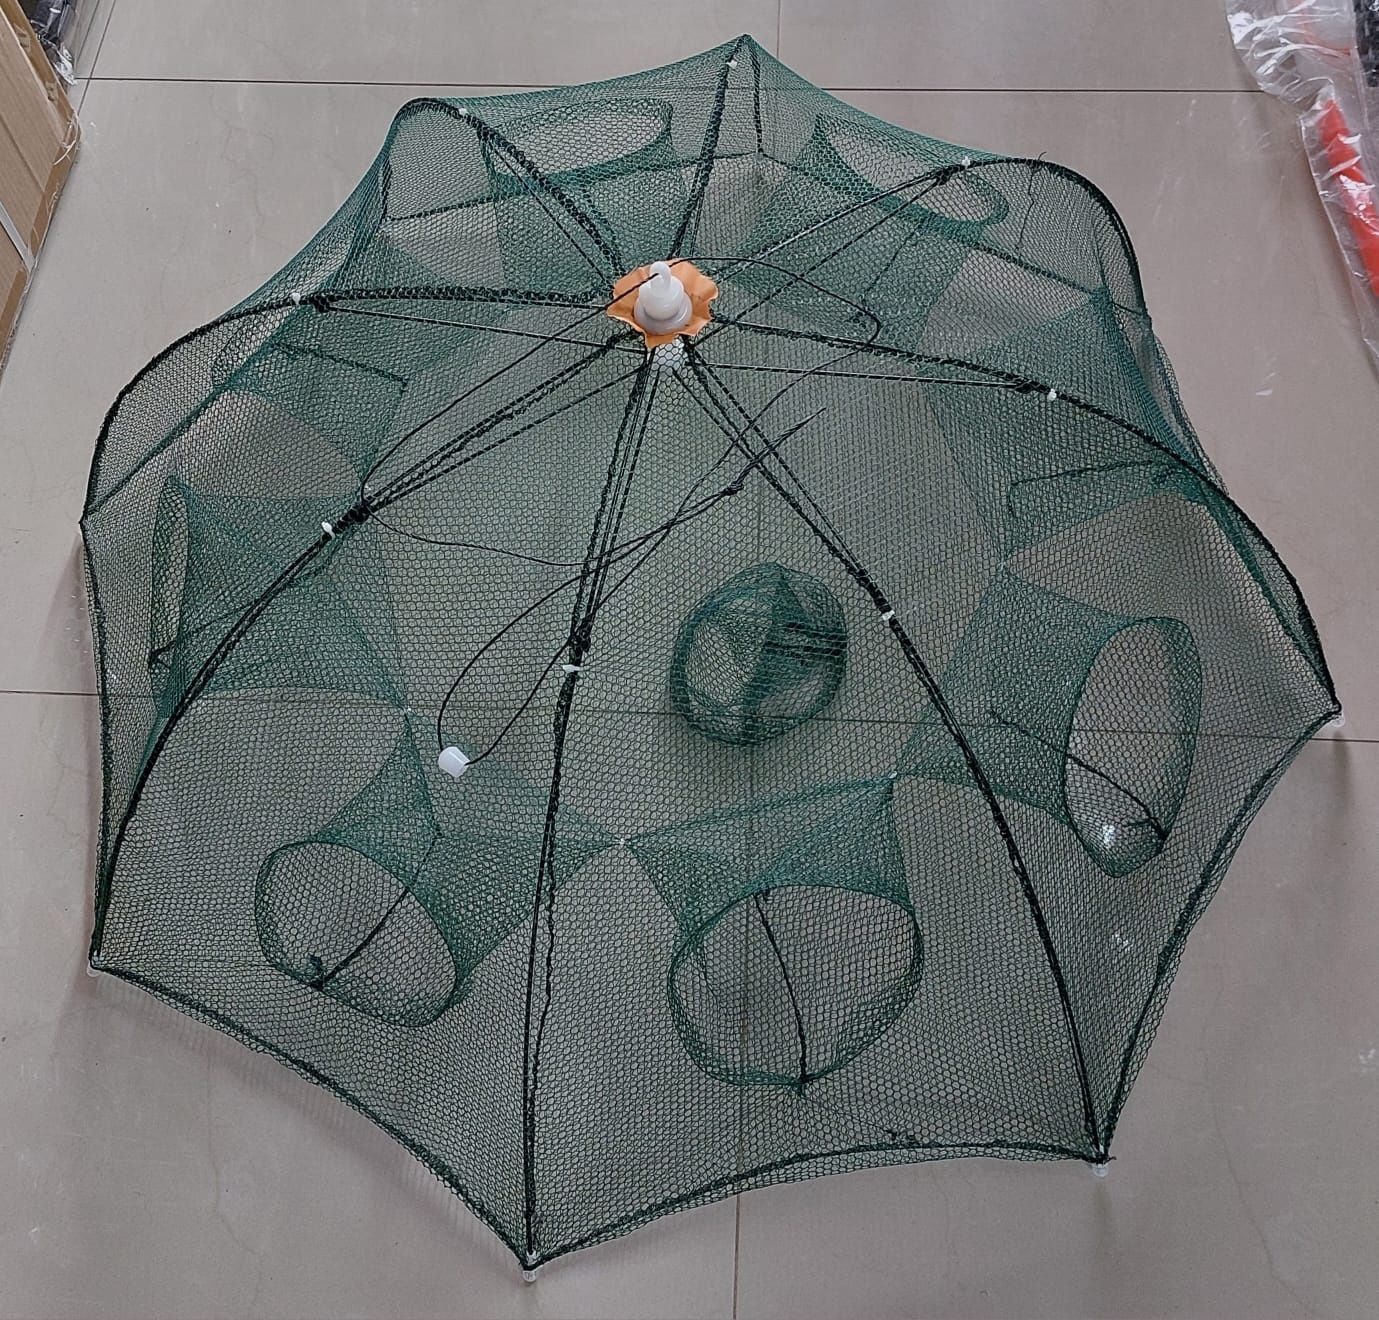 Раколовка - зонтик восемь ходов.